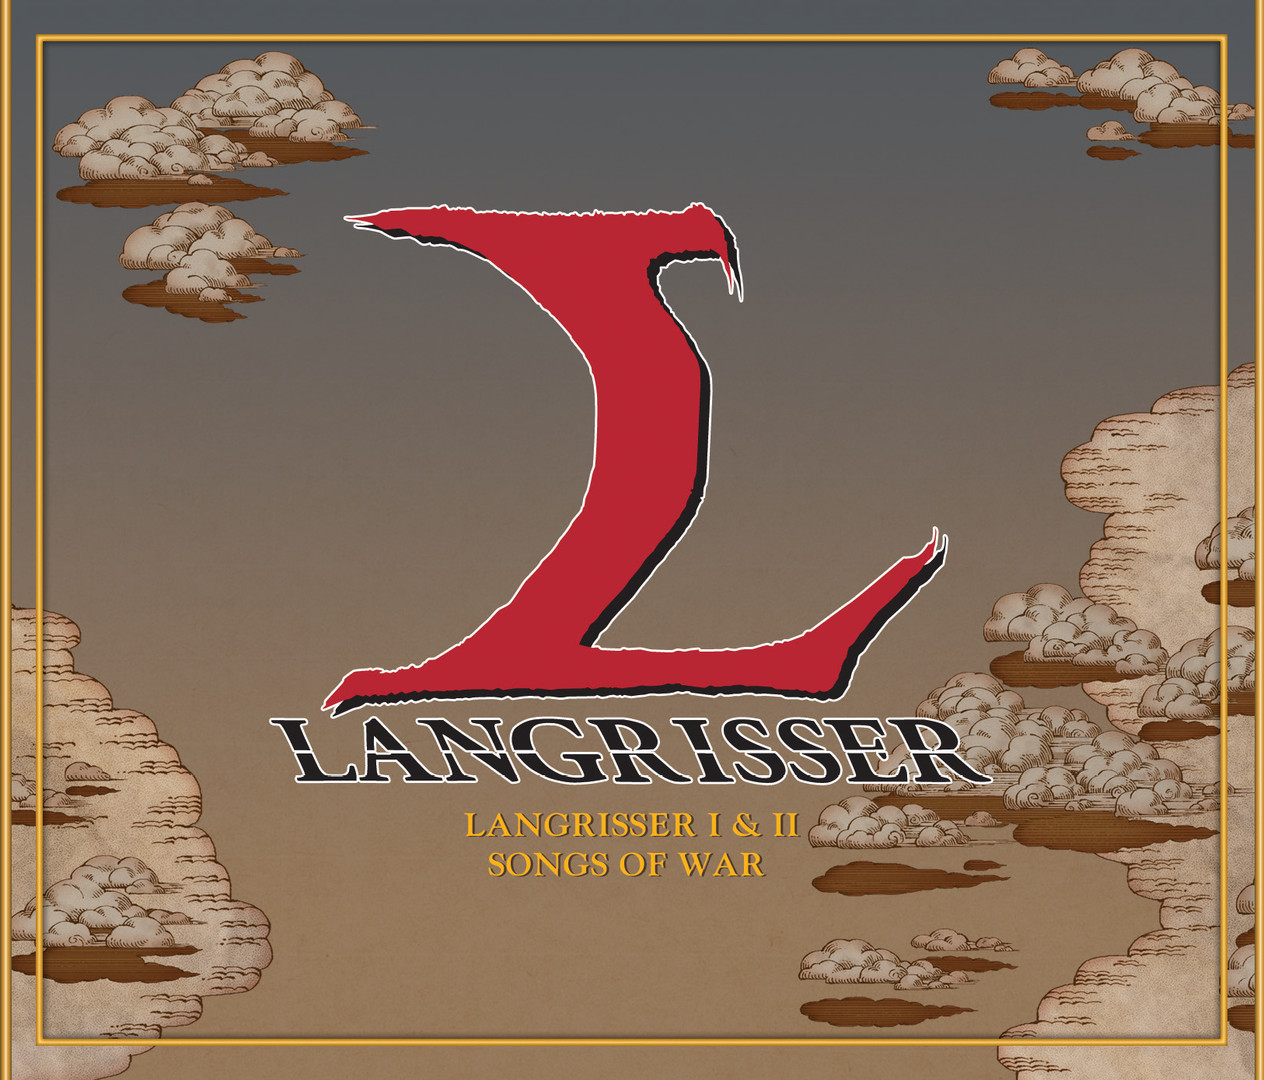 [$ 10.16] Langrisser I & II - Songs of War 3-Disc Soundtrack DLC Steam CD Key